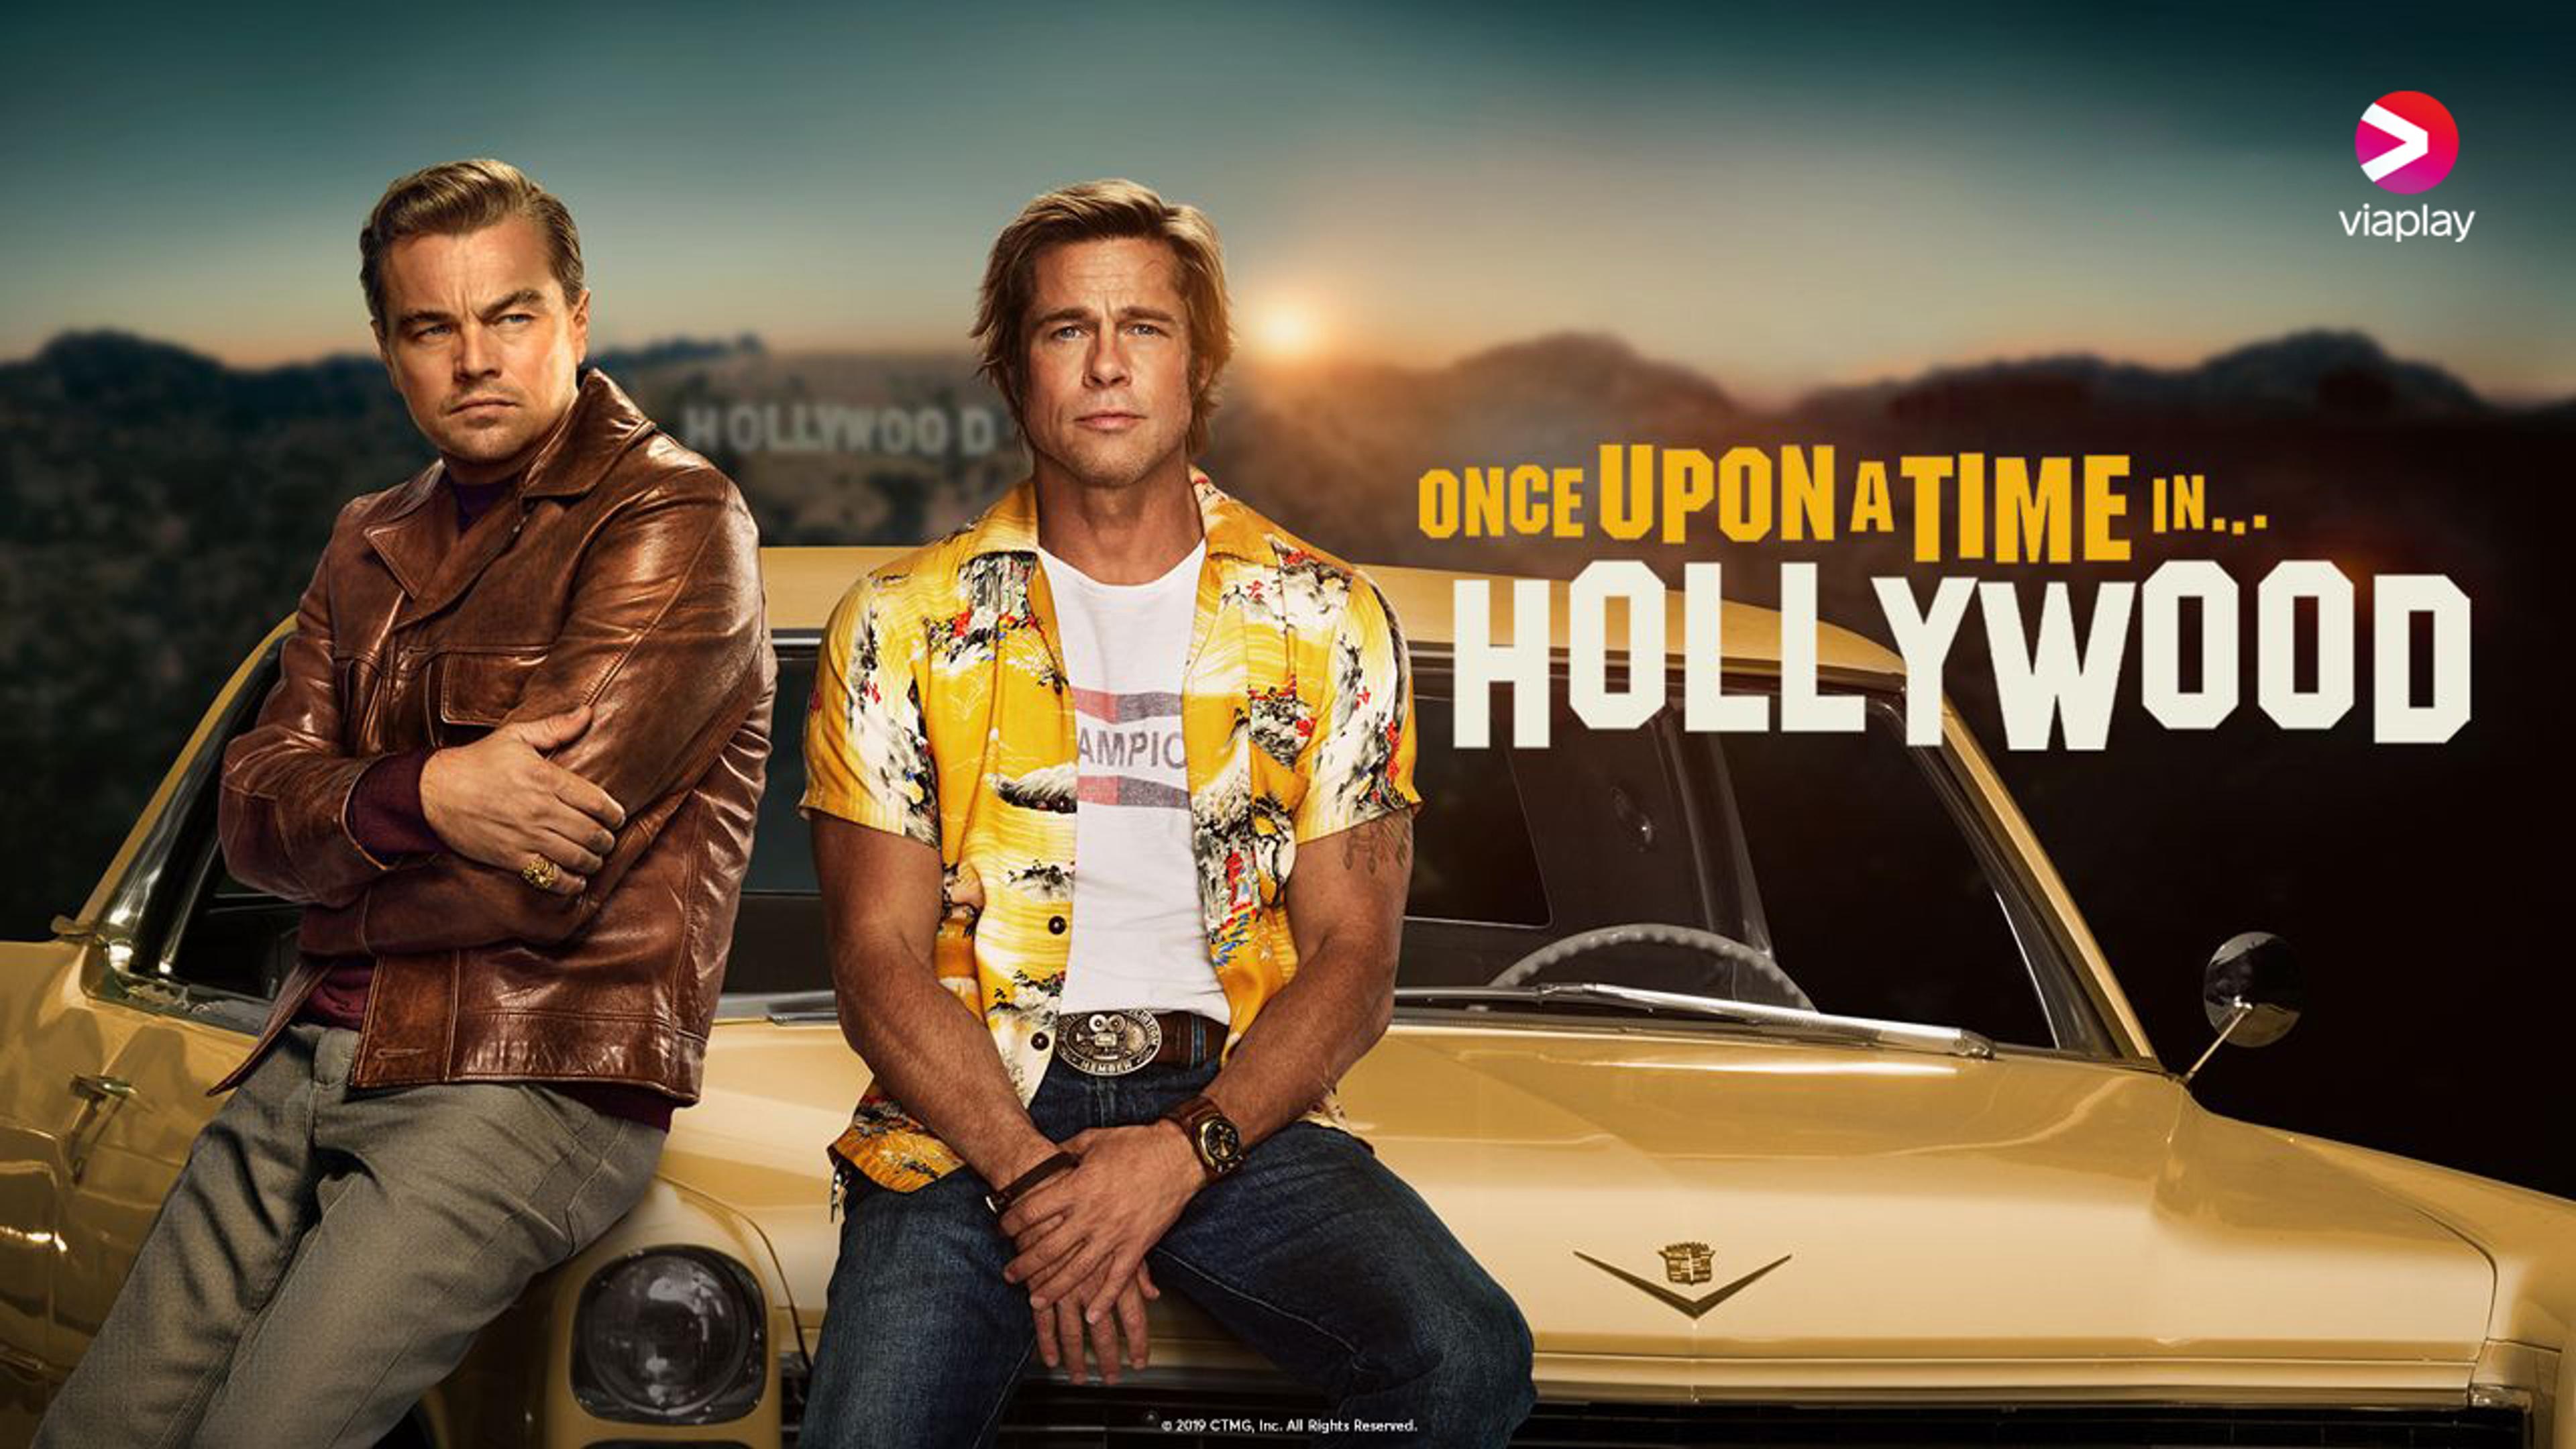 DiCaprio og Pitt sitter på panseret til en gul sportsbil med Hollywood Hills i bakgrunnen.